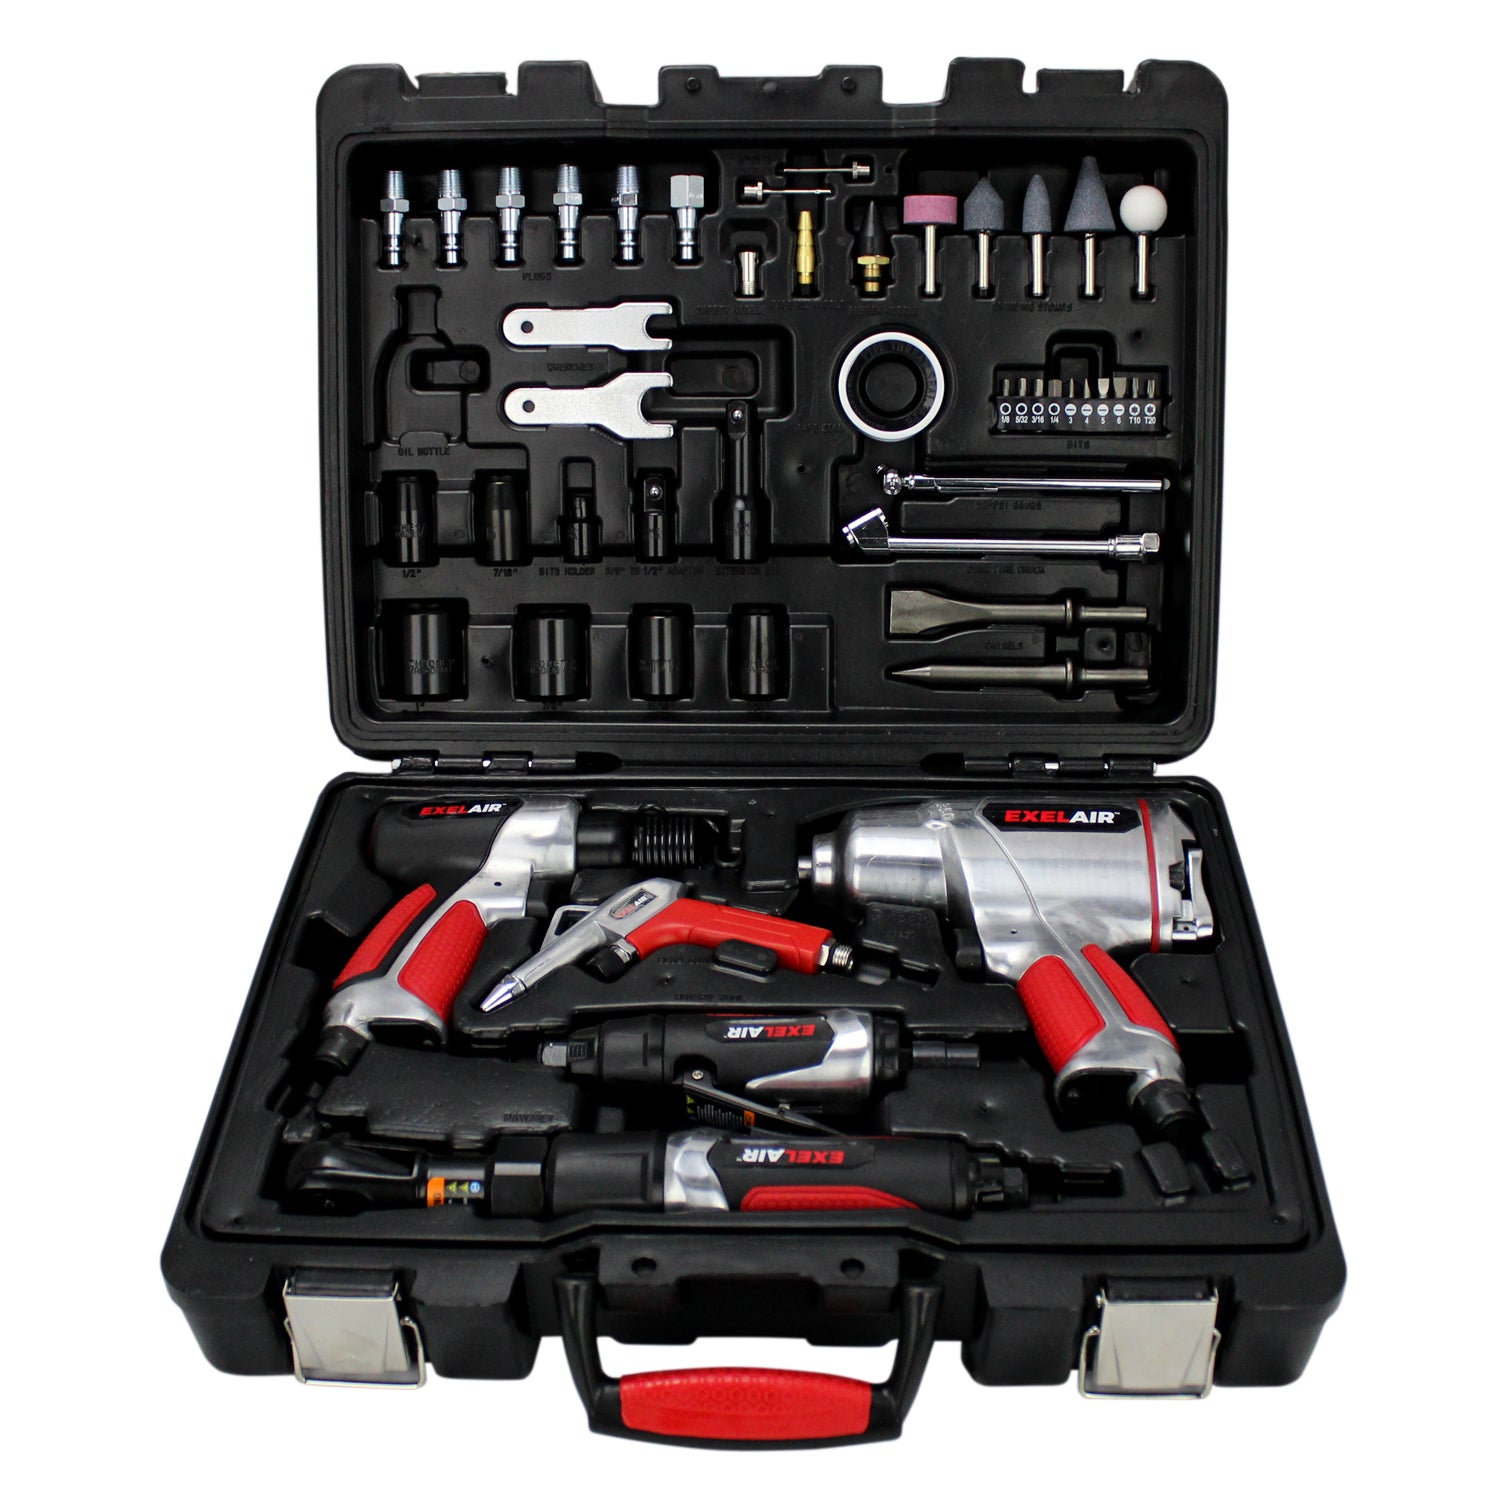 EXELAIR® 50 Professional Air Tool Kit Milton INC® — Milton® Industries